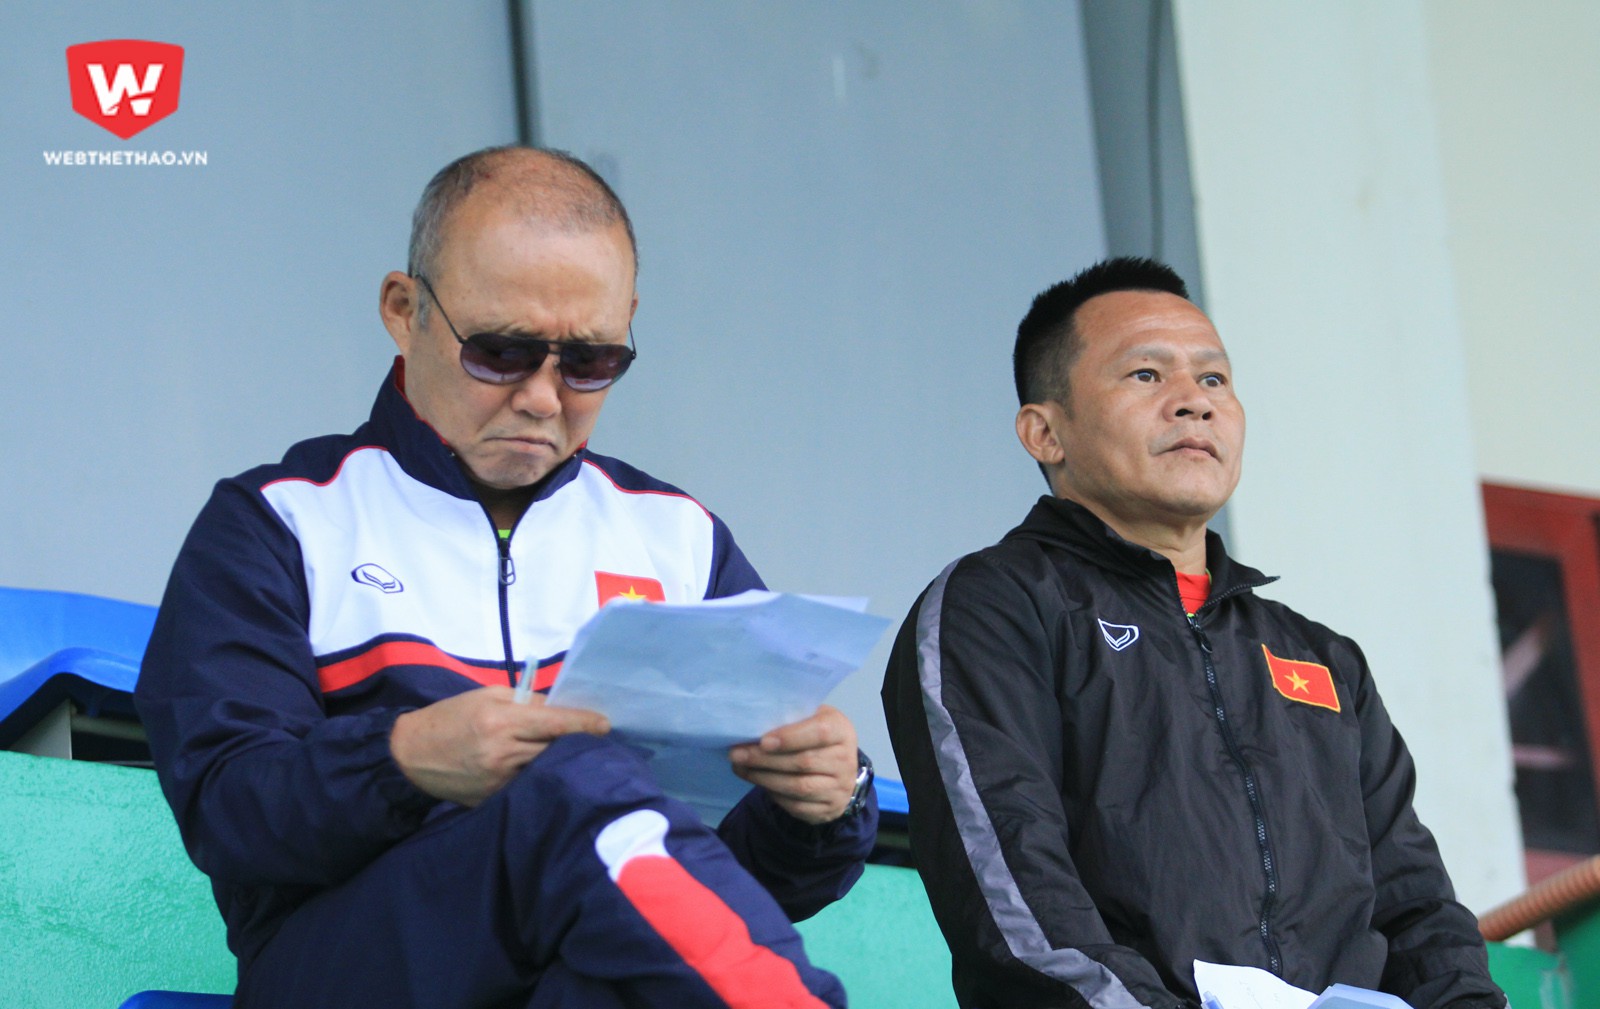 Ông Park chủ yếu ngồi trên khán đài để theo dõi các học trò thi đấu cùng trợ lý Lư Đình Tuấn, thỉnh thoảng ông lại nhìn vào tờ giấy ghi chiến thuật. Ảnh: Trung Thu.